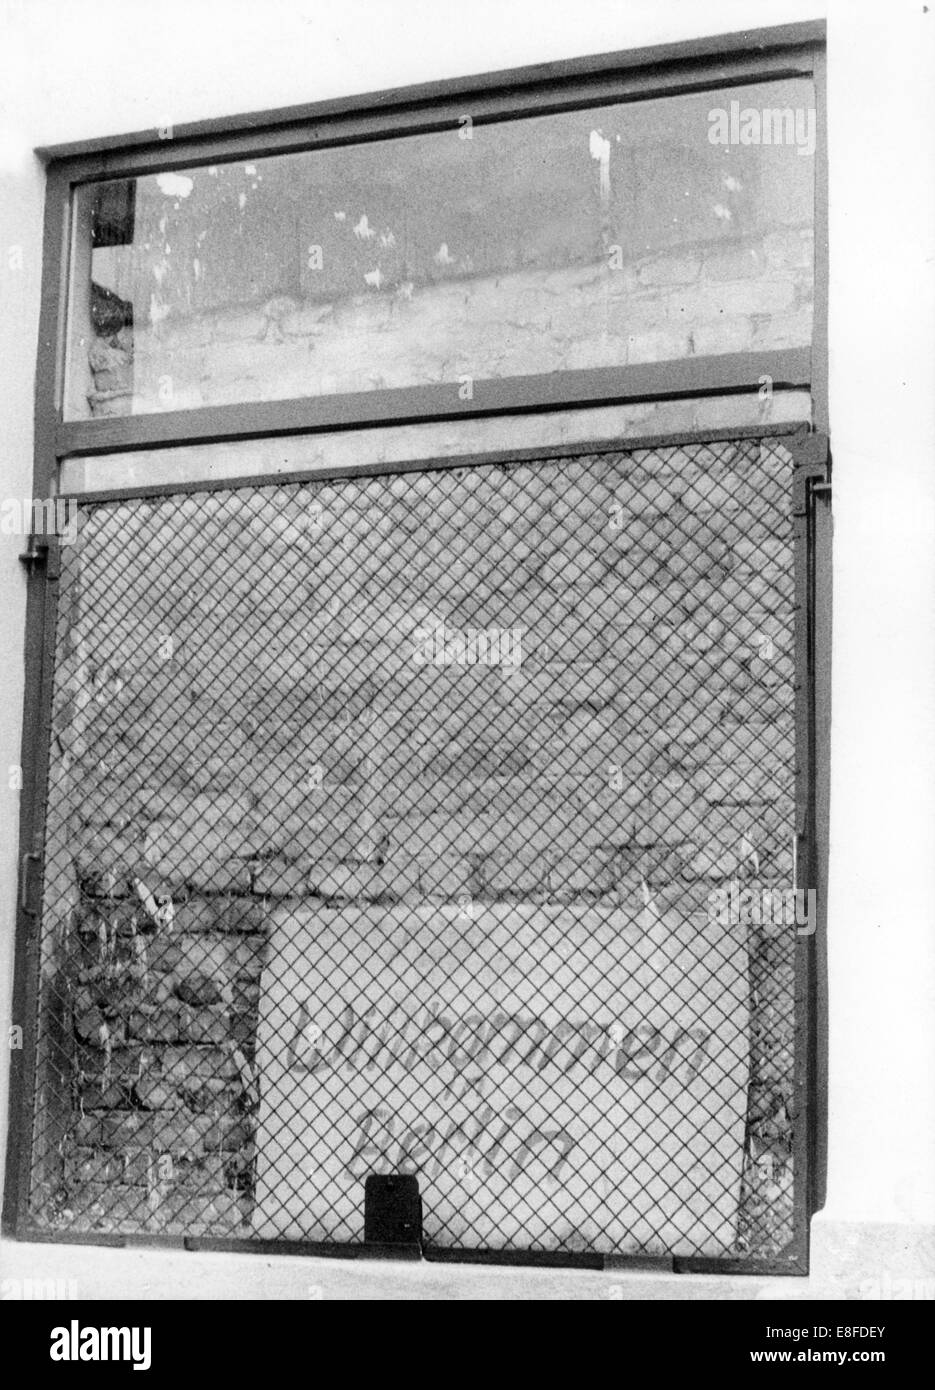 Un panneau disant 'Bienvenue' Berlin se trouve dans une fenêtre murée dans la rue Bernauer à Berlin le 24 août en 1961. Banque D'Images